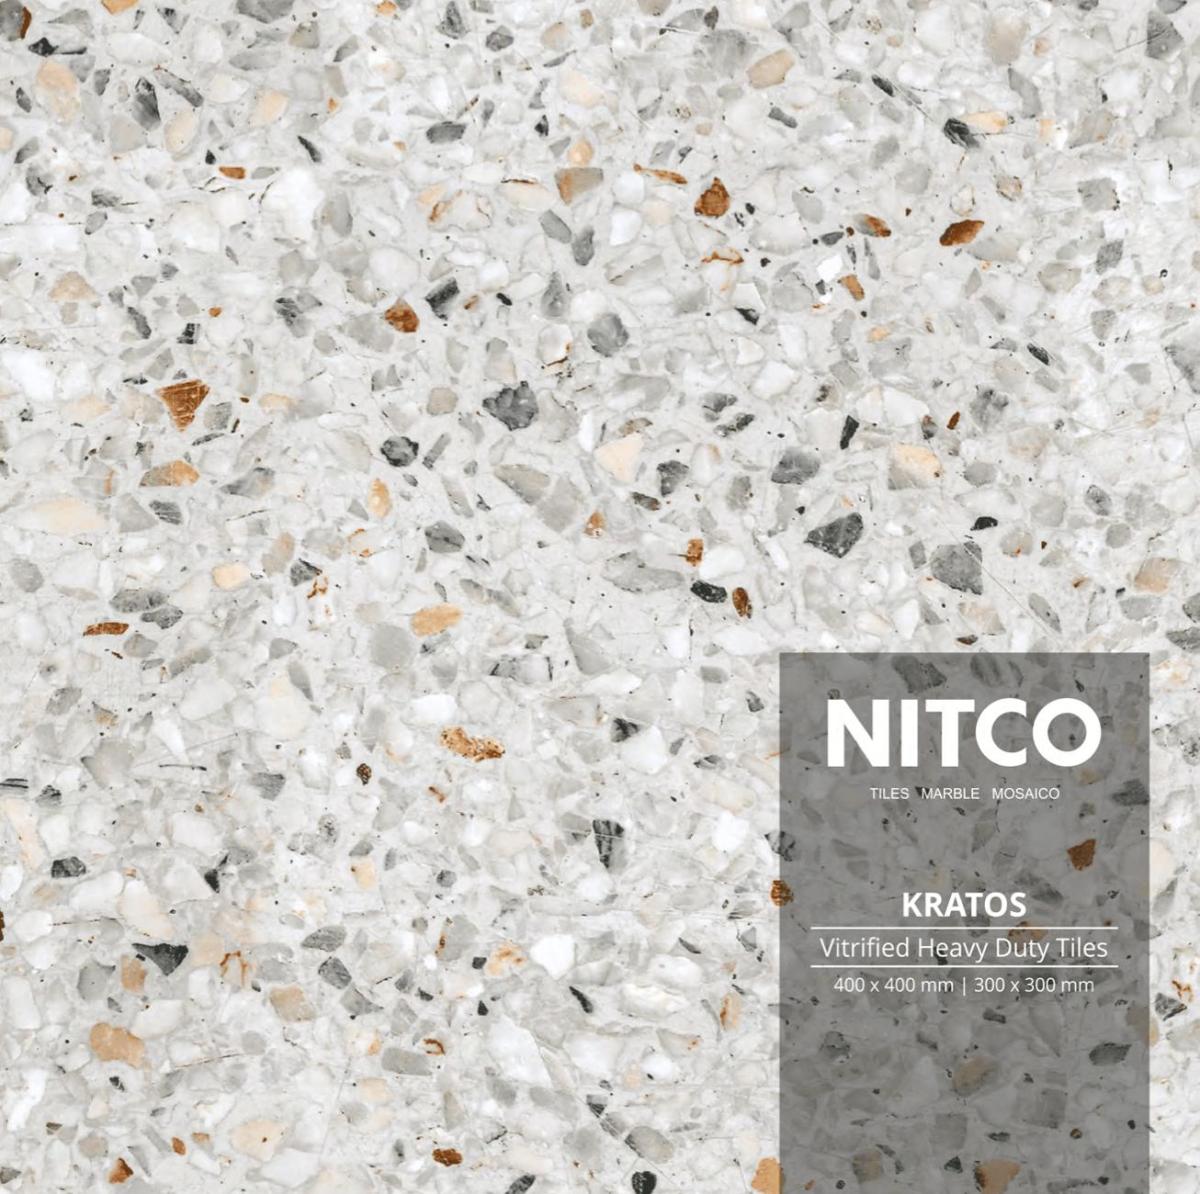 Nitco Vitrified Heavy Duty Tiles Catalogue 2024
400x400mm | 300x300mm